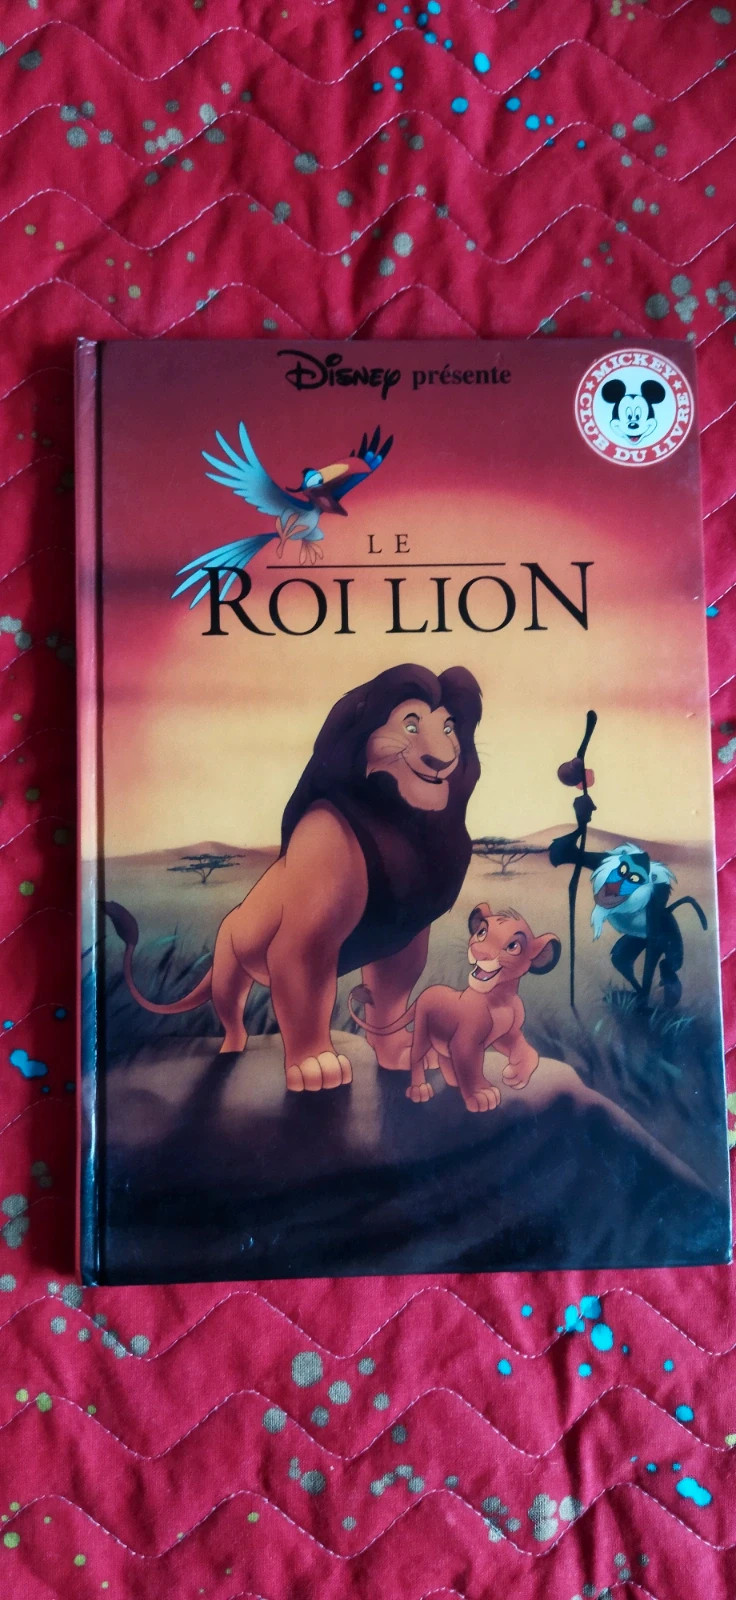 Le Roi Lion Simba Theme Party Supplies Set Kid Birthday Decor